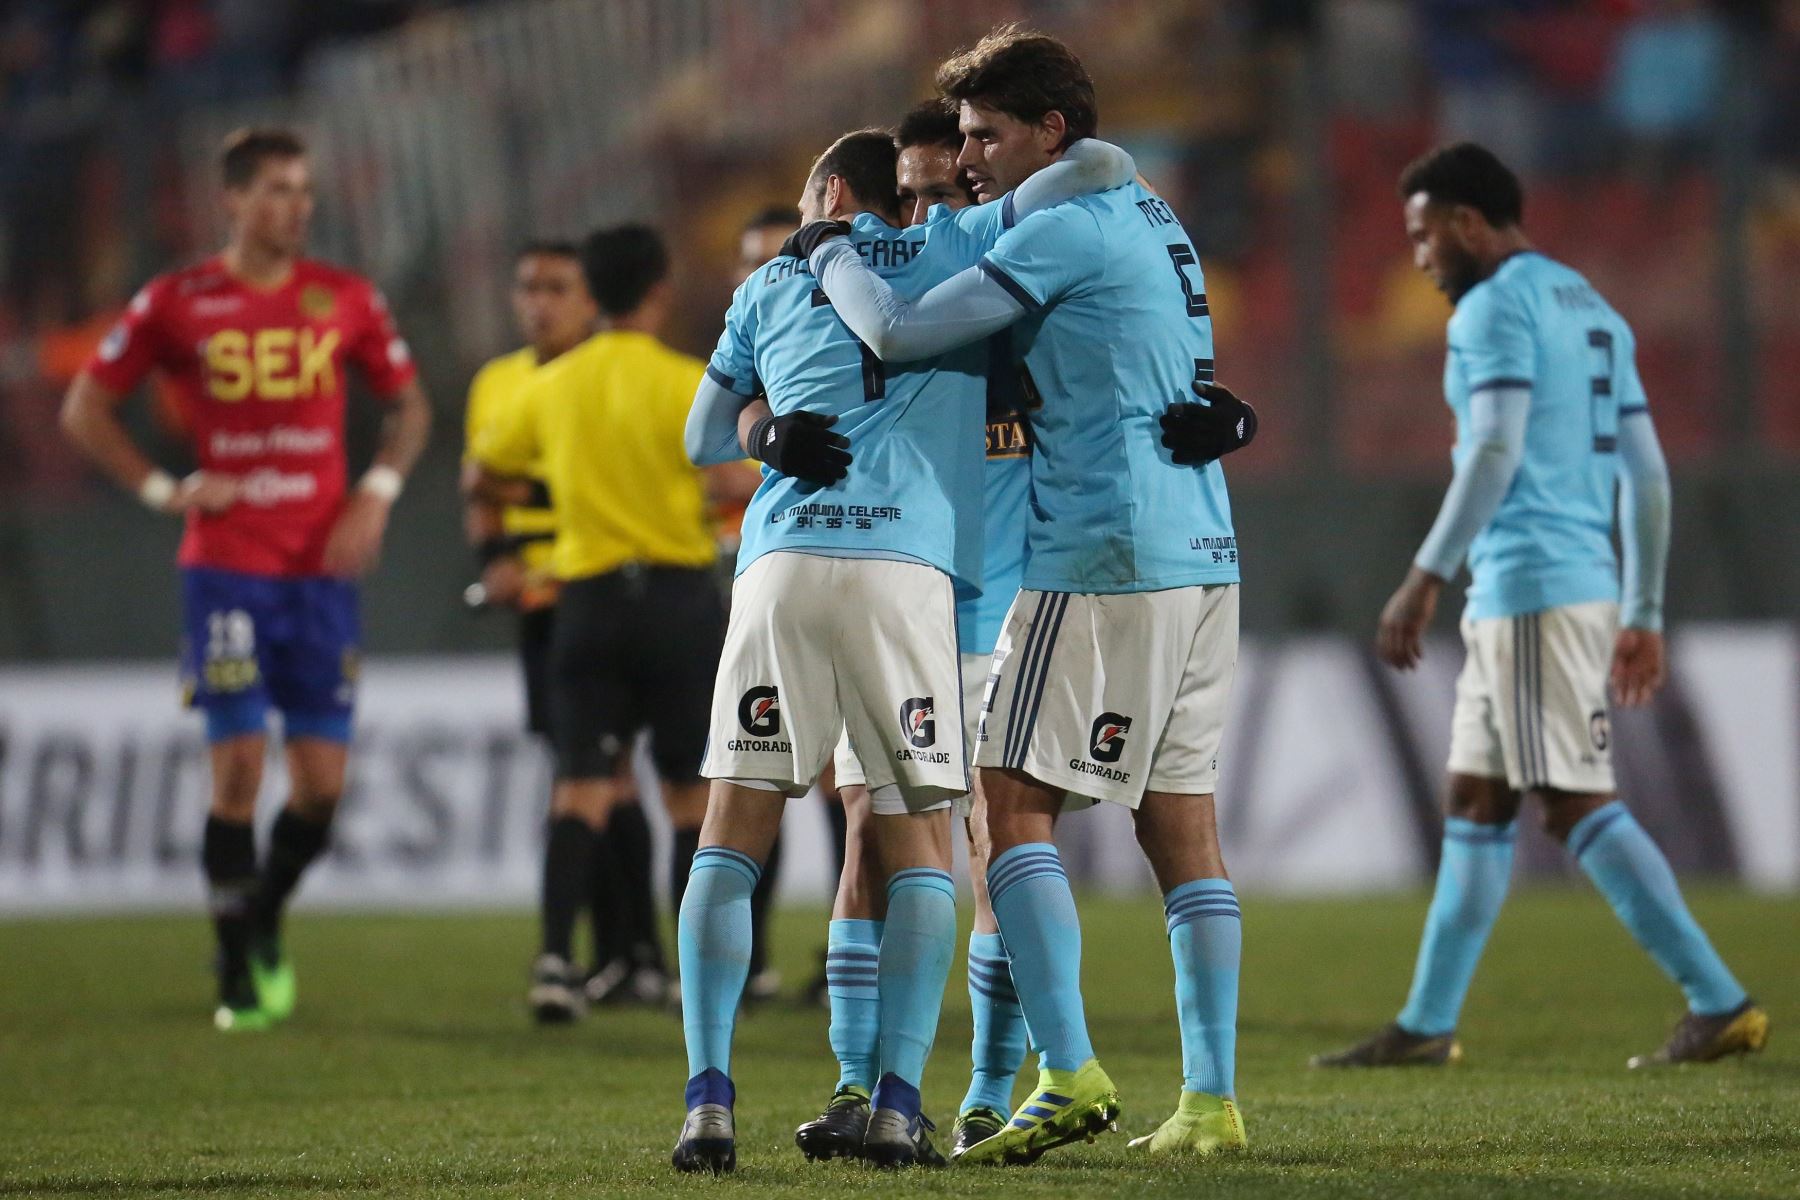 Jugadores de Sporting Cristal festejan tras vencer a Unión Española durante un partido de fútbol de la Copa Sudamericana 2019.
Foto:EFE